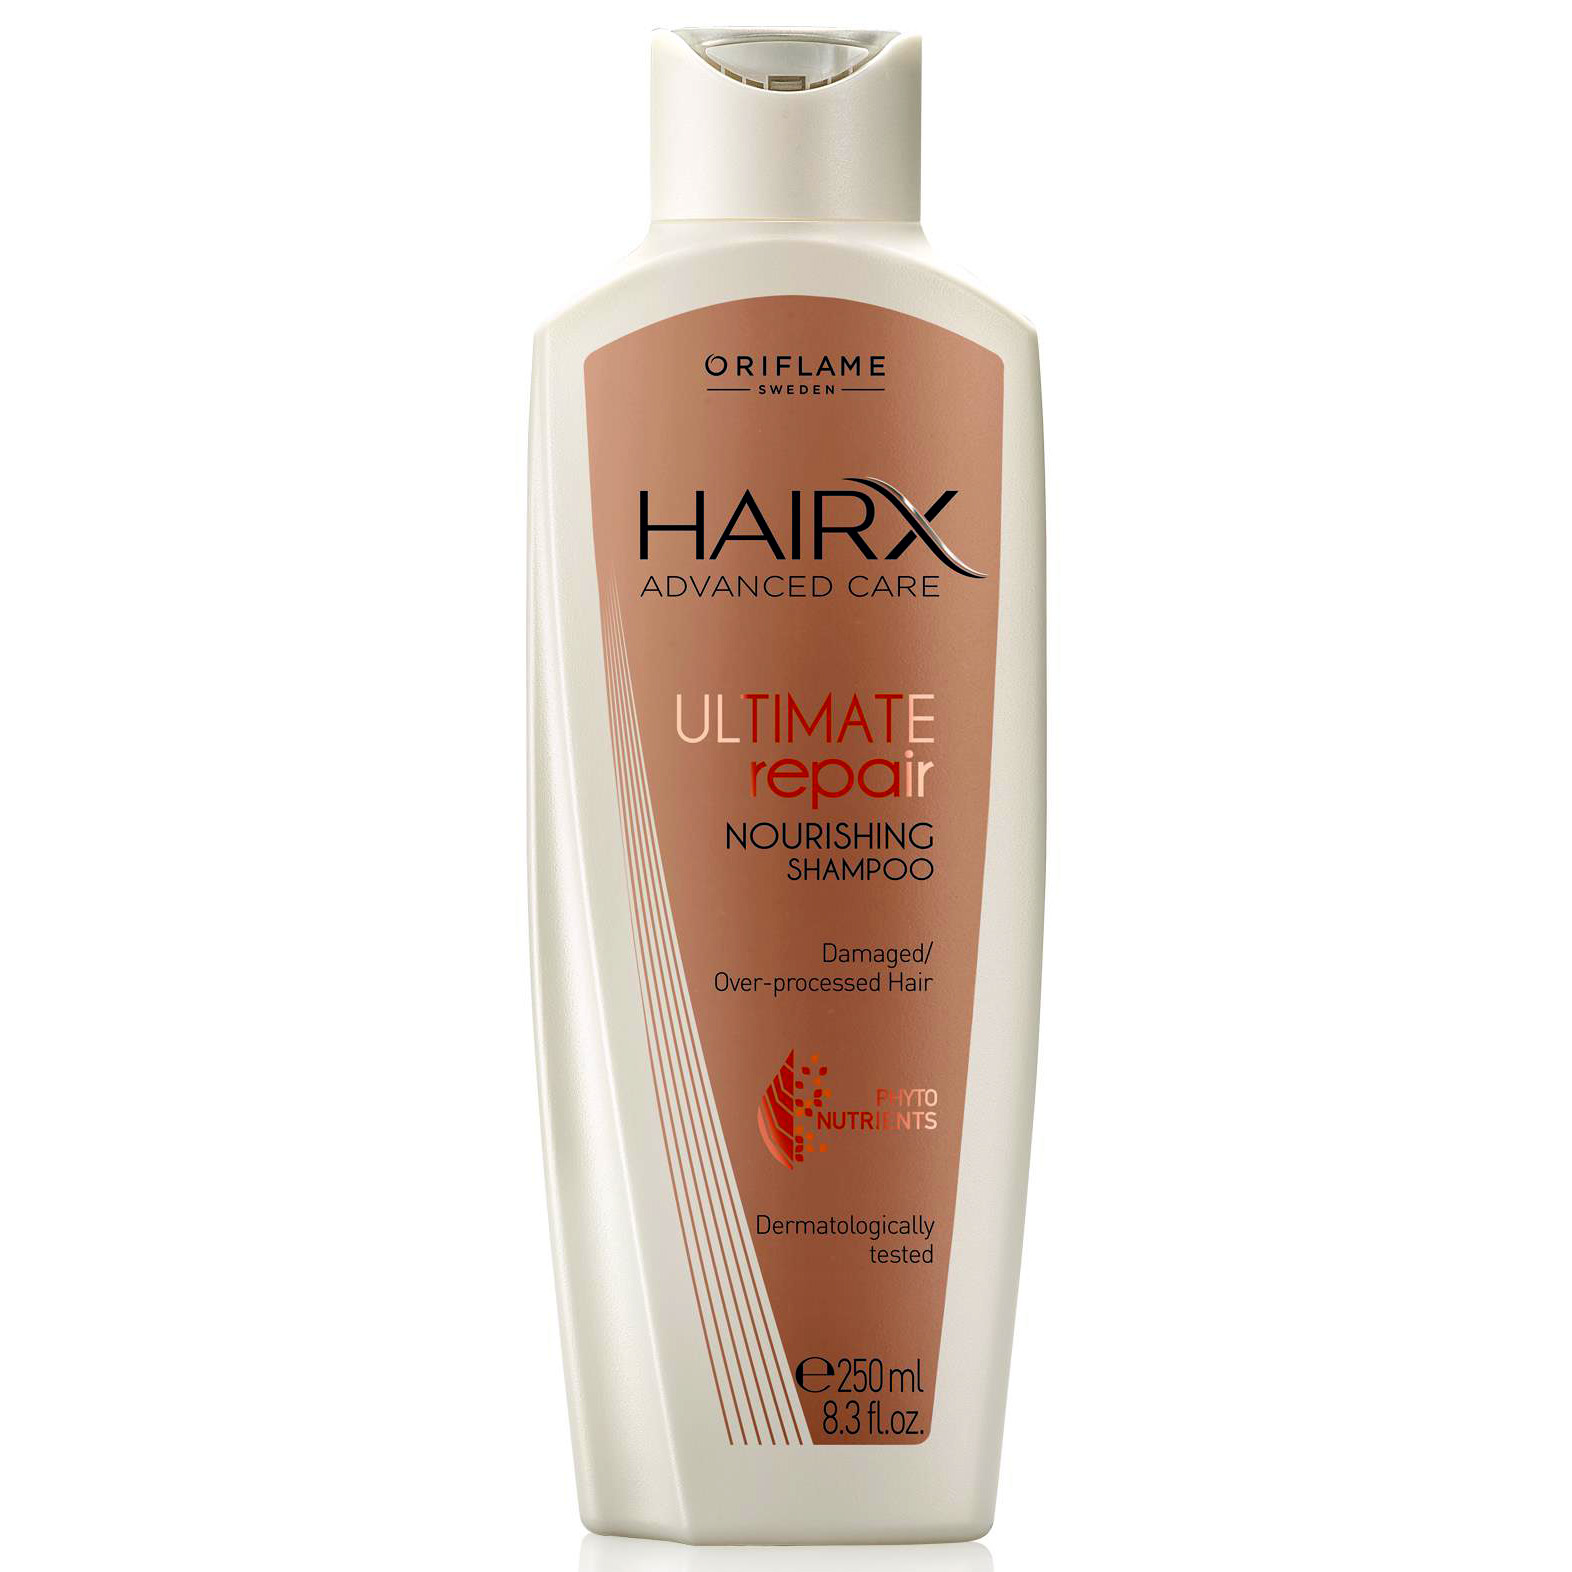 oriflame hairx szampon zwiększający objętość włosów volume boost